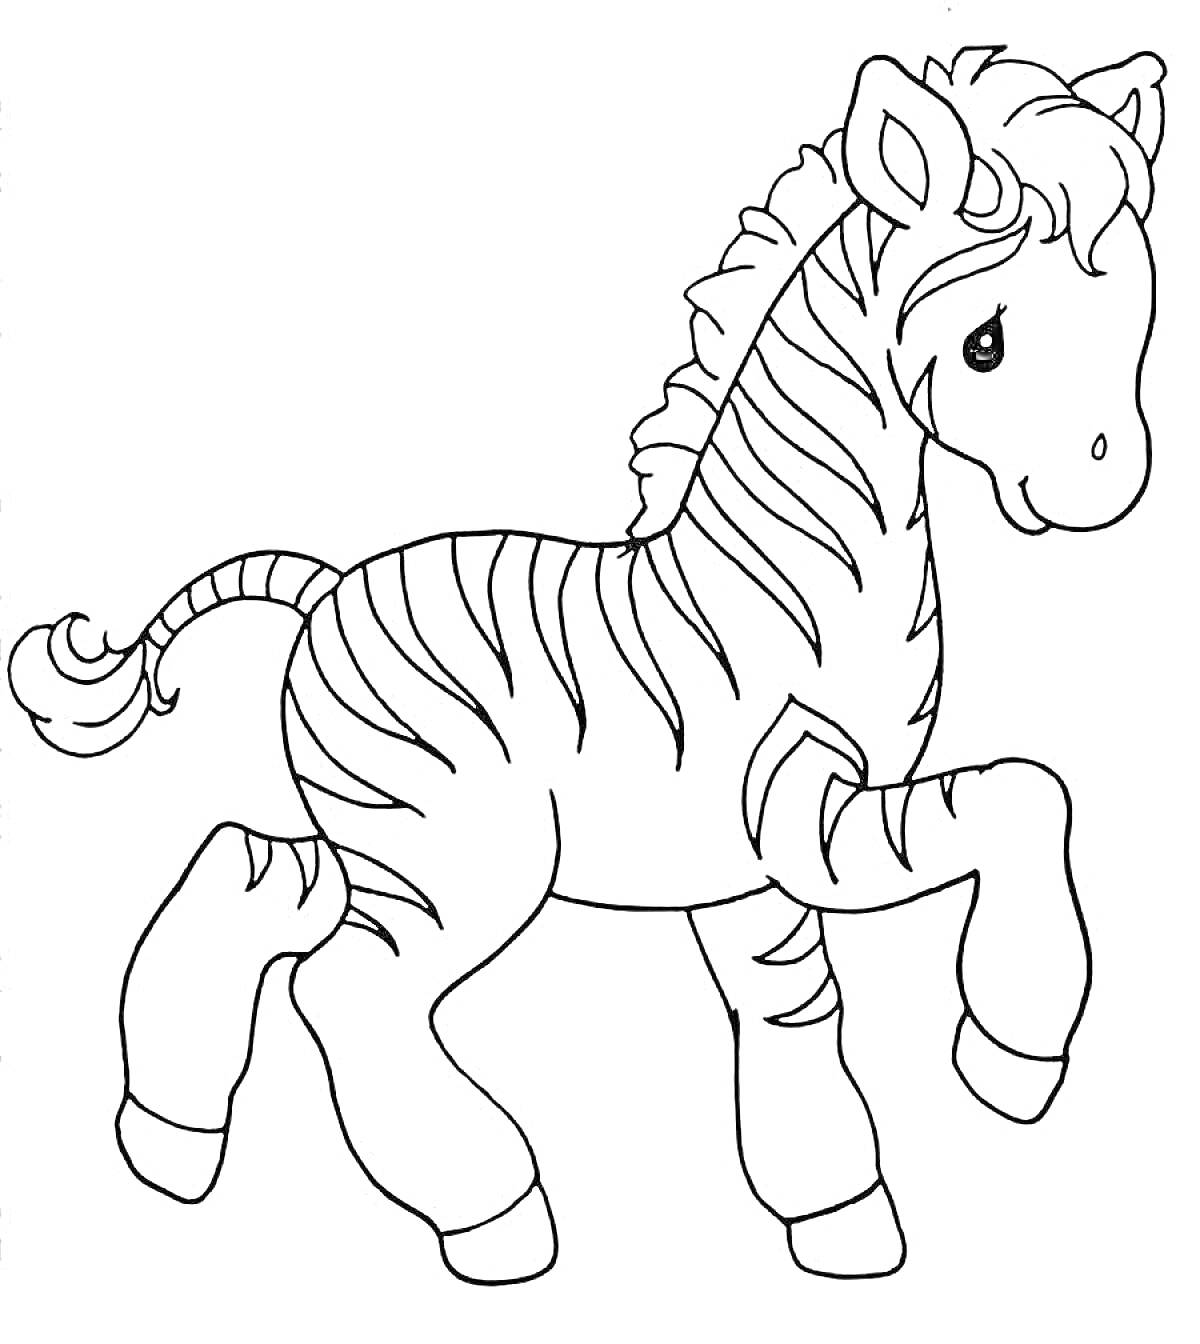 Раскраска Раскраска с изображением зебры, поднимающей одну ногу